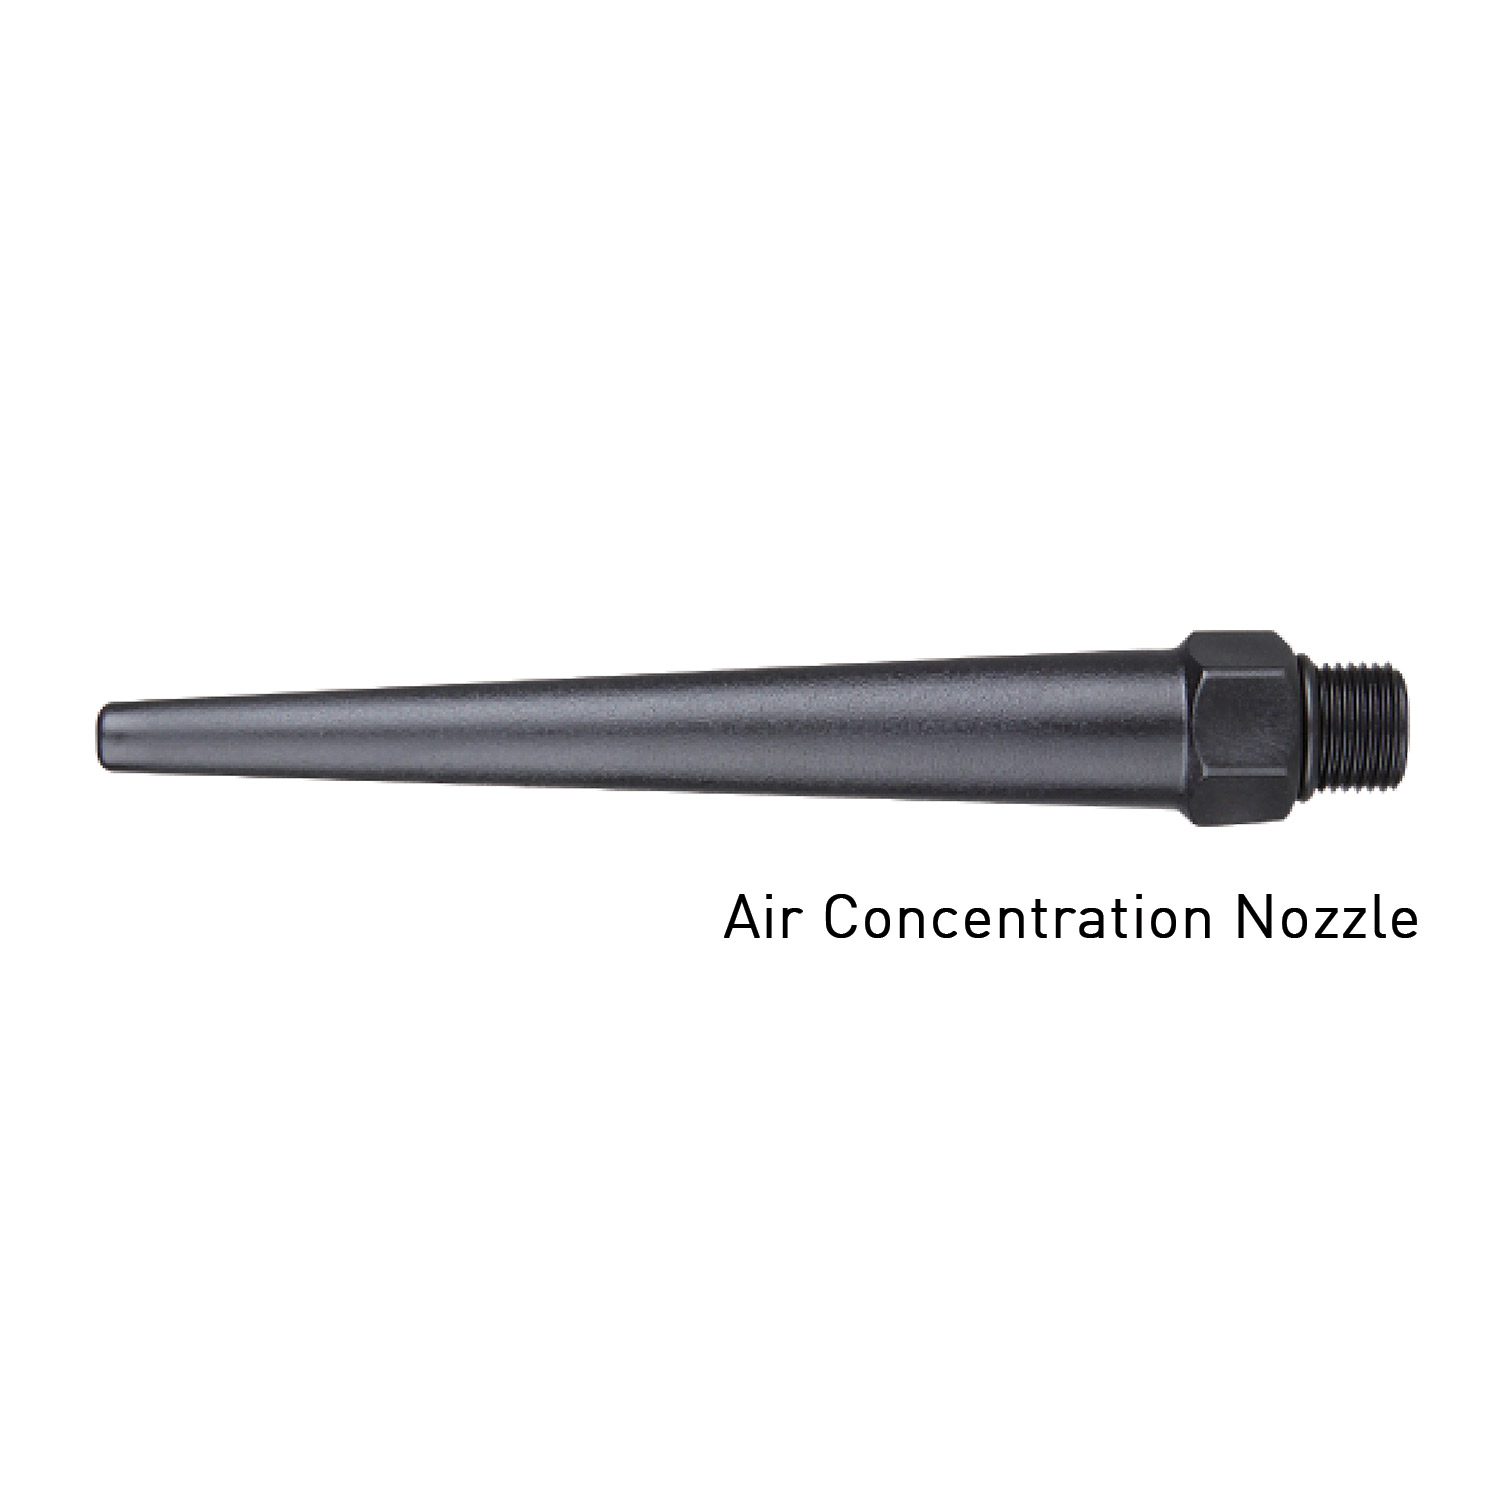 Capri Tools 5-Piece Nozzle Set for Capri Tools 2-Way Air Blow Gun